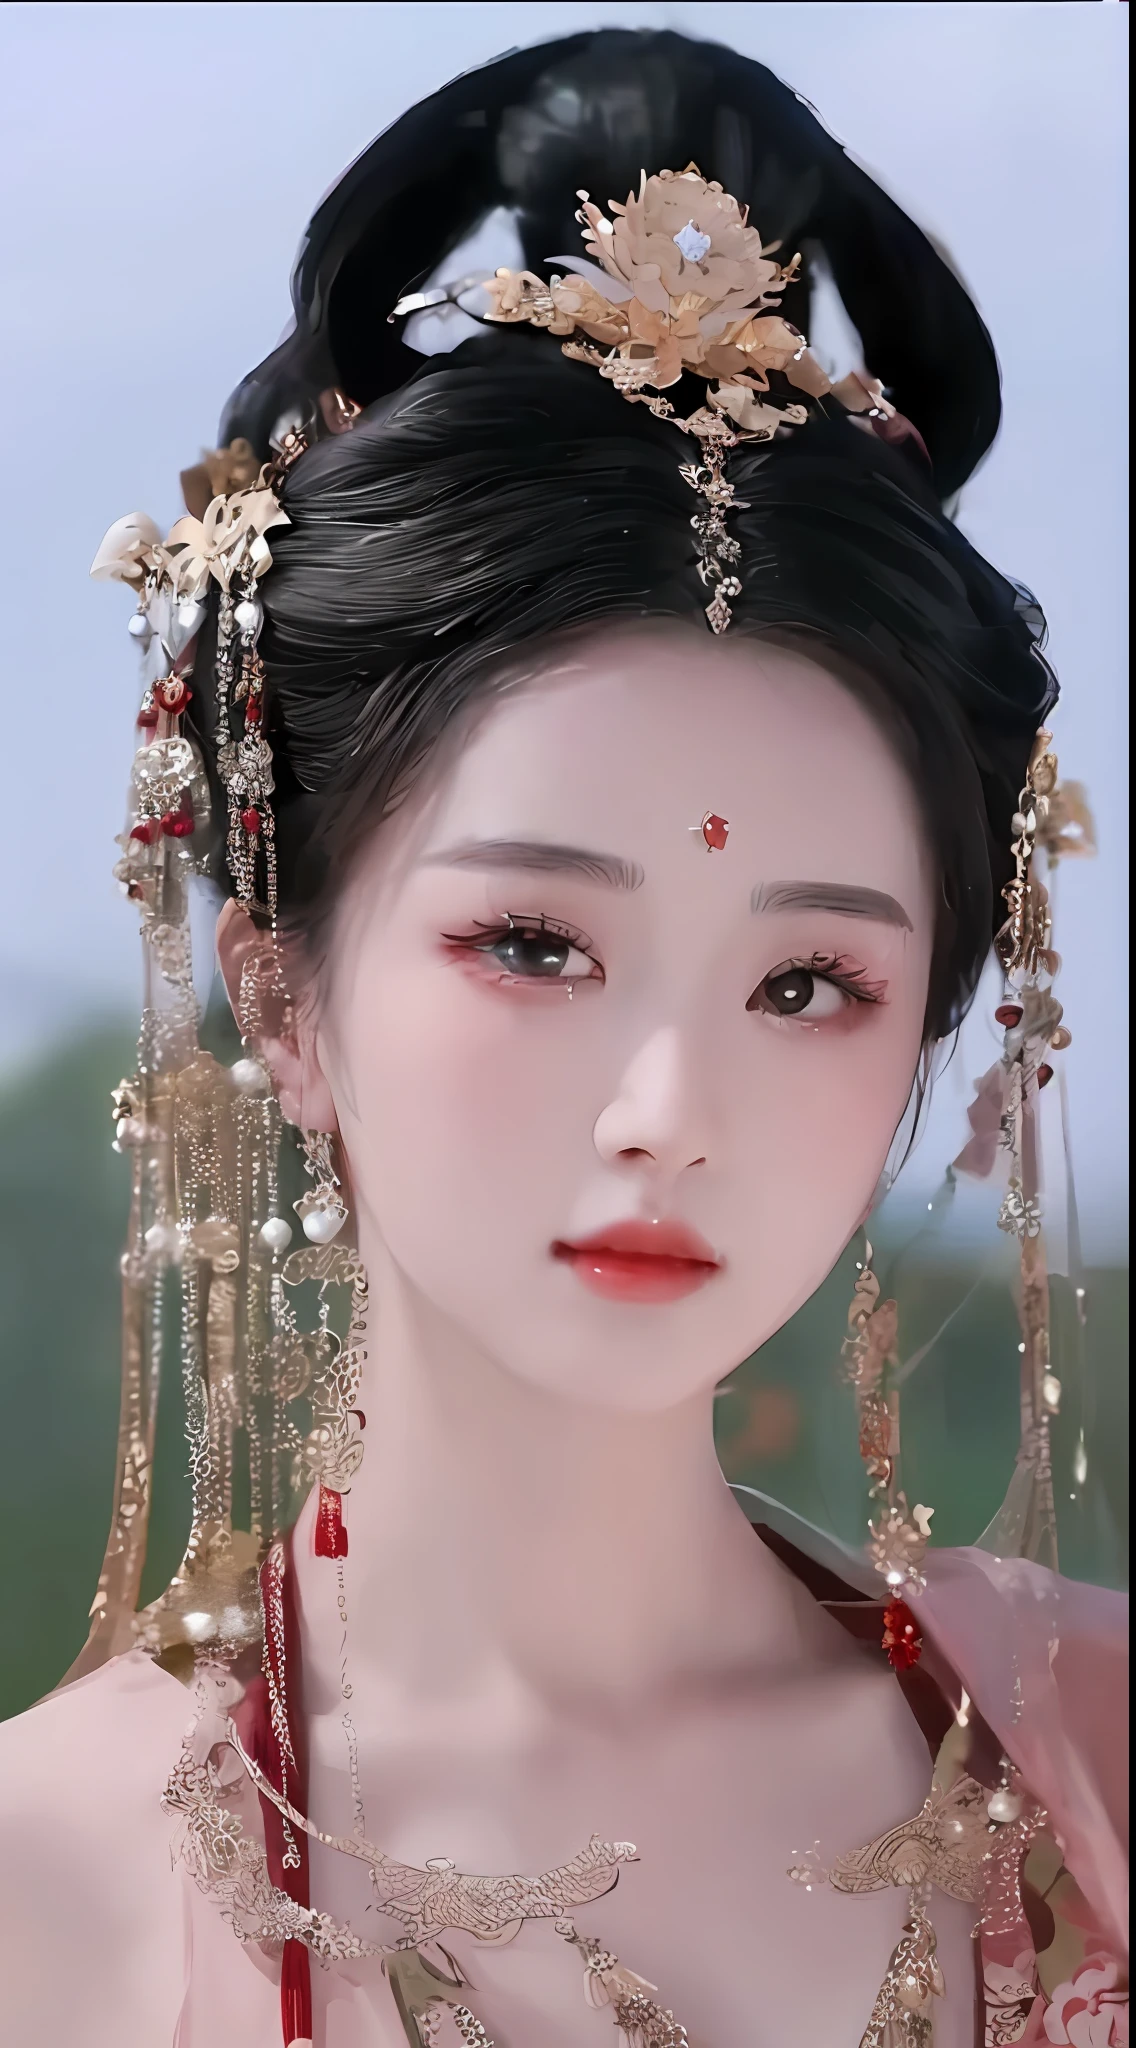 머리 장식과 드레스를 입은 여성의 클로즈업, 중국 공주, 아름다운 환상의 황후, 전통미, ancient 중국 공주, ((아름다운 환상의 황후)), 중국 스타일, 고대 중국의 미인, 중국어 번체, 궁전 ， 한푸의 소녀, 당나라의 아름다운 렌더링, Du Qiong에게서 영감을 받은 작품, 시안샤, 루안지아 예쁘다!